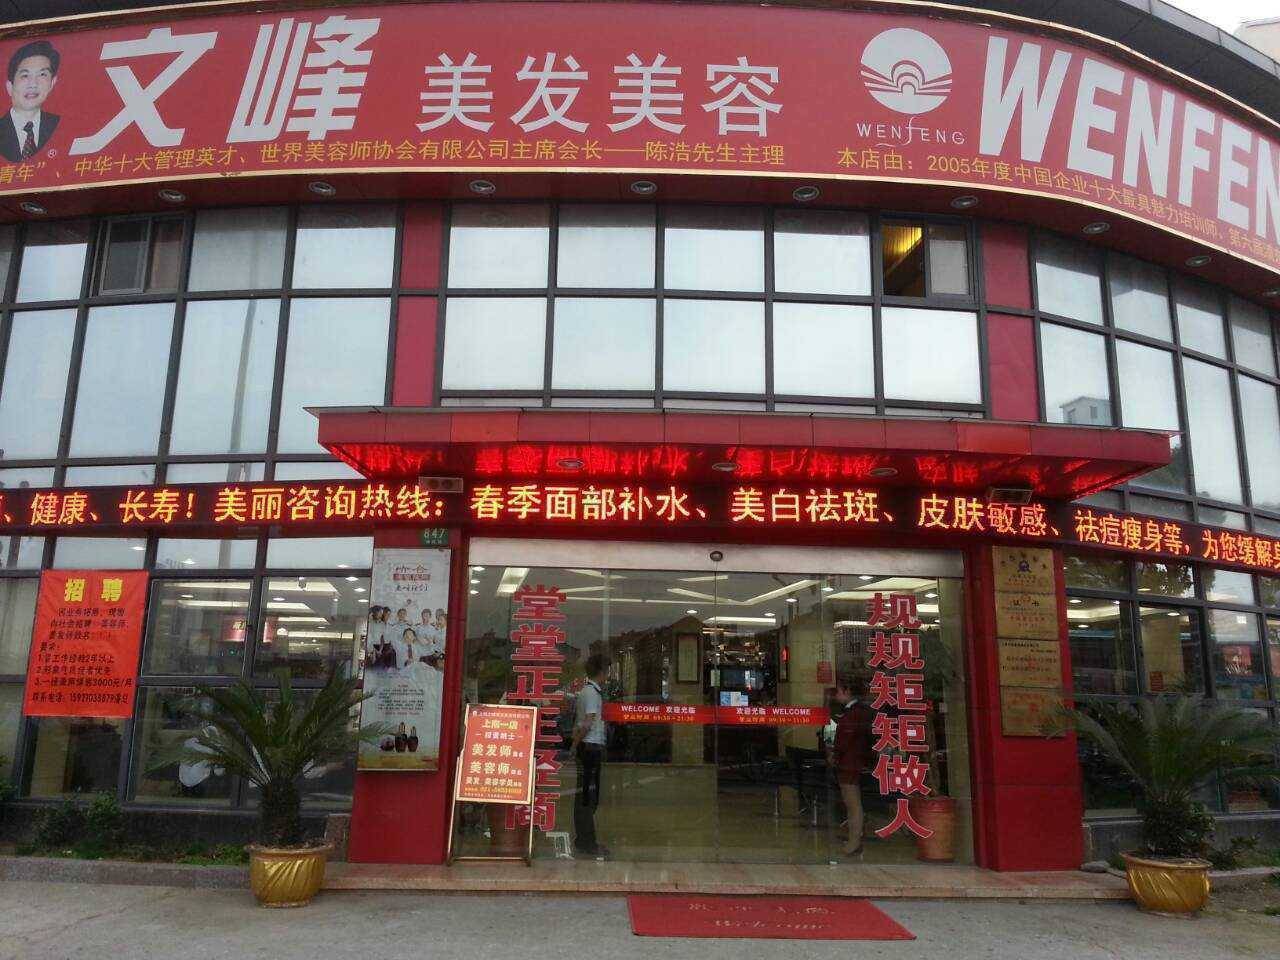 门店详情   文峰美发美容始创于1996年,总部位于上海普陀区,是一家集图片